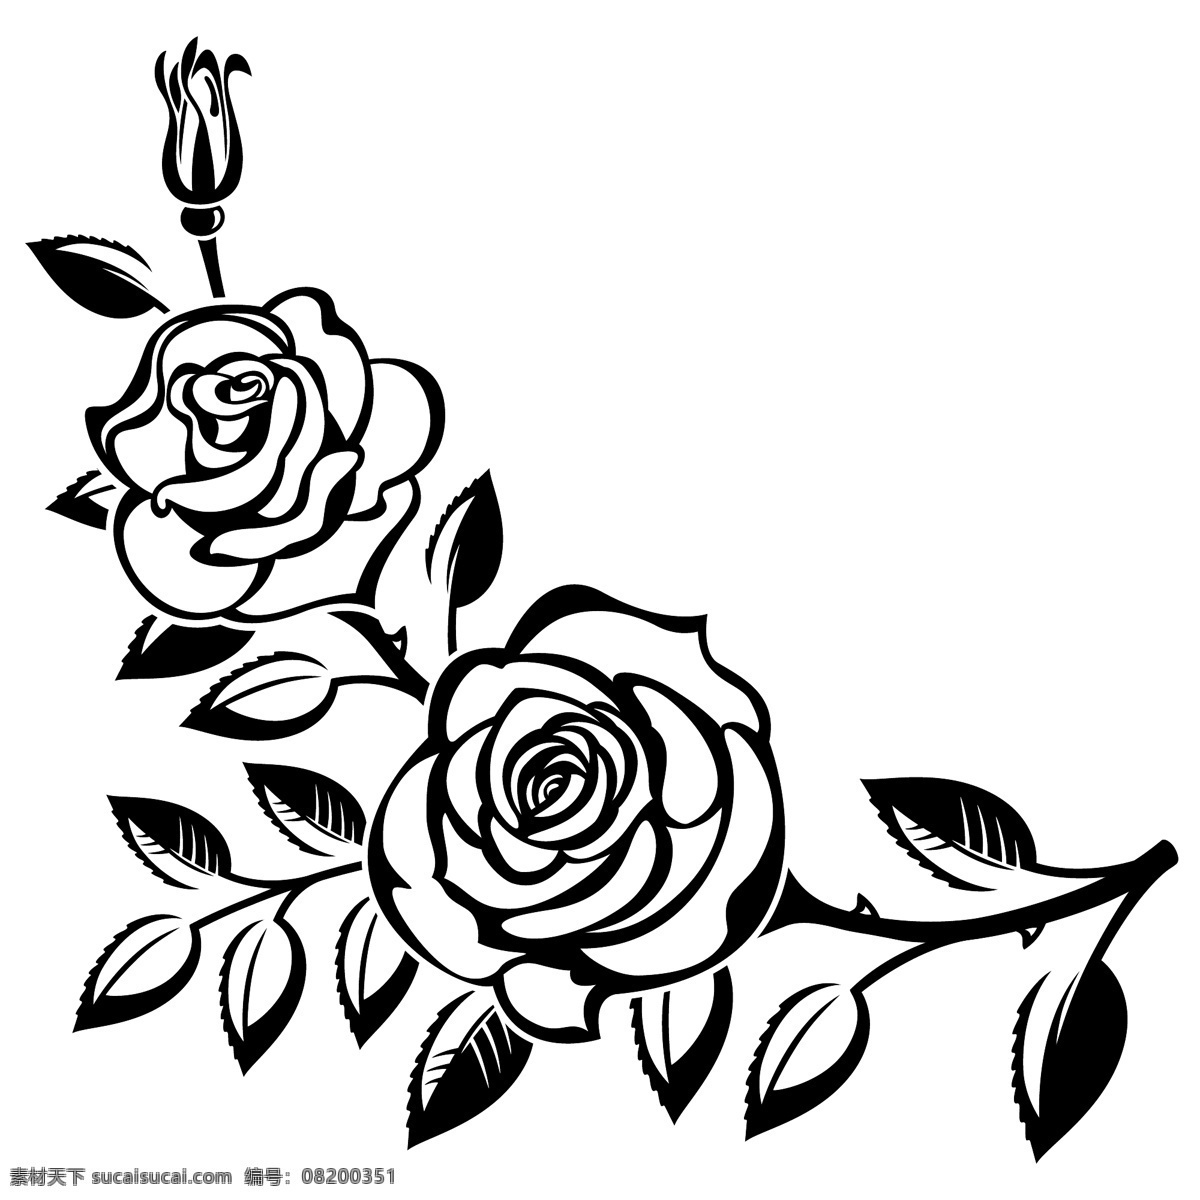 黑白 时尚 玫瑰花 植物 插画 手绘 艺术